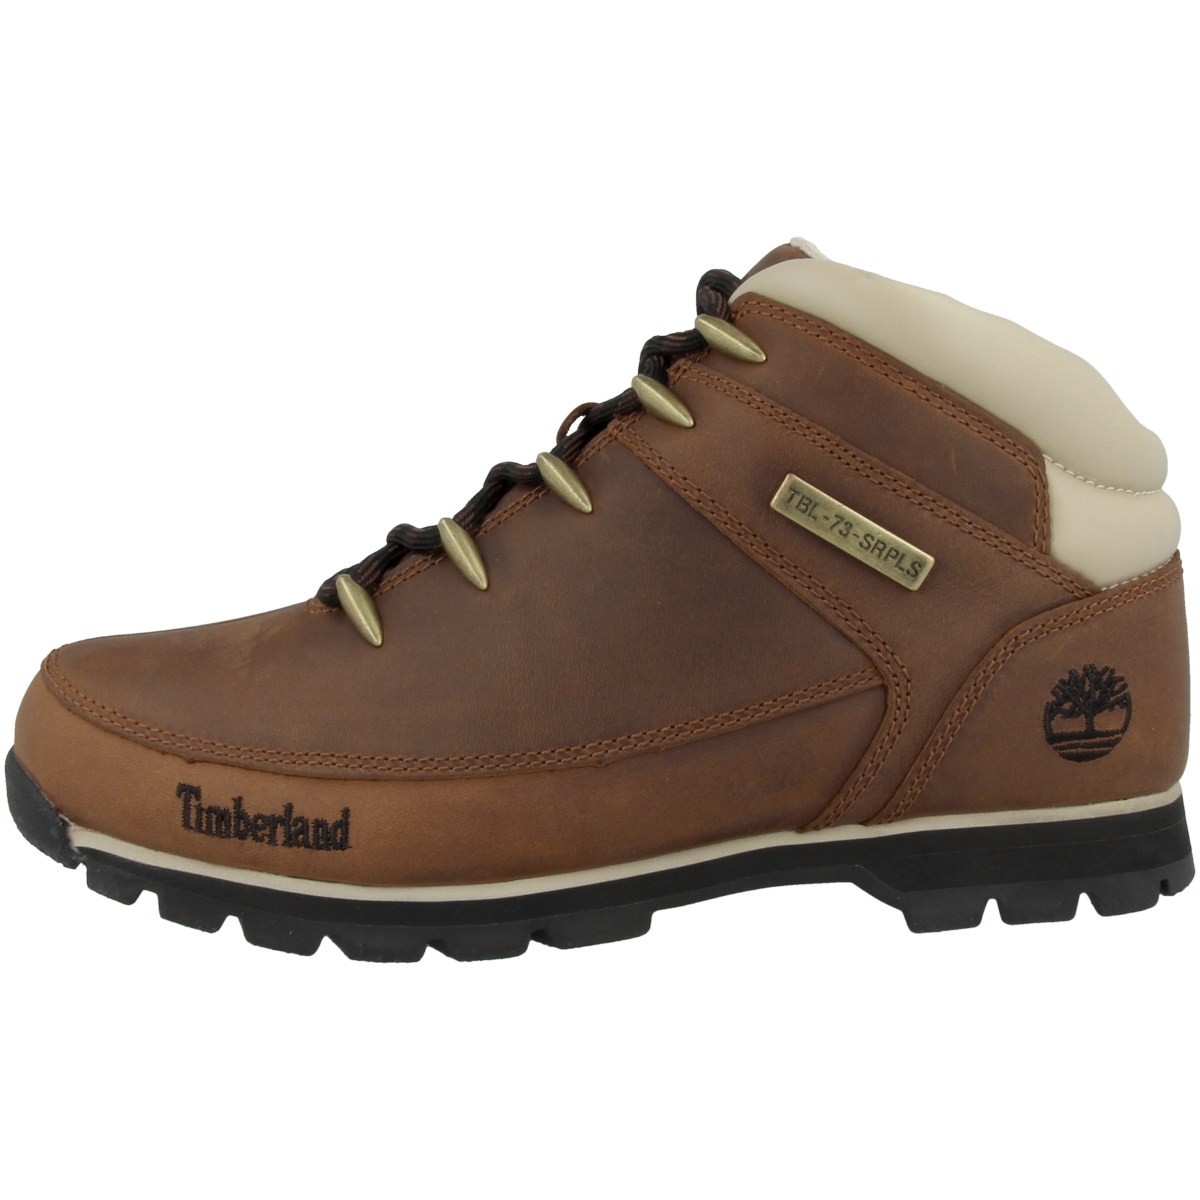 Ботинки Timberland Schnür Euro Sprint Mid Hiker, коричневый ботинки timberland schnür euro sprint mid hiker коричневый